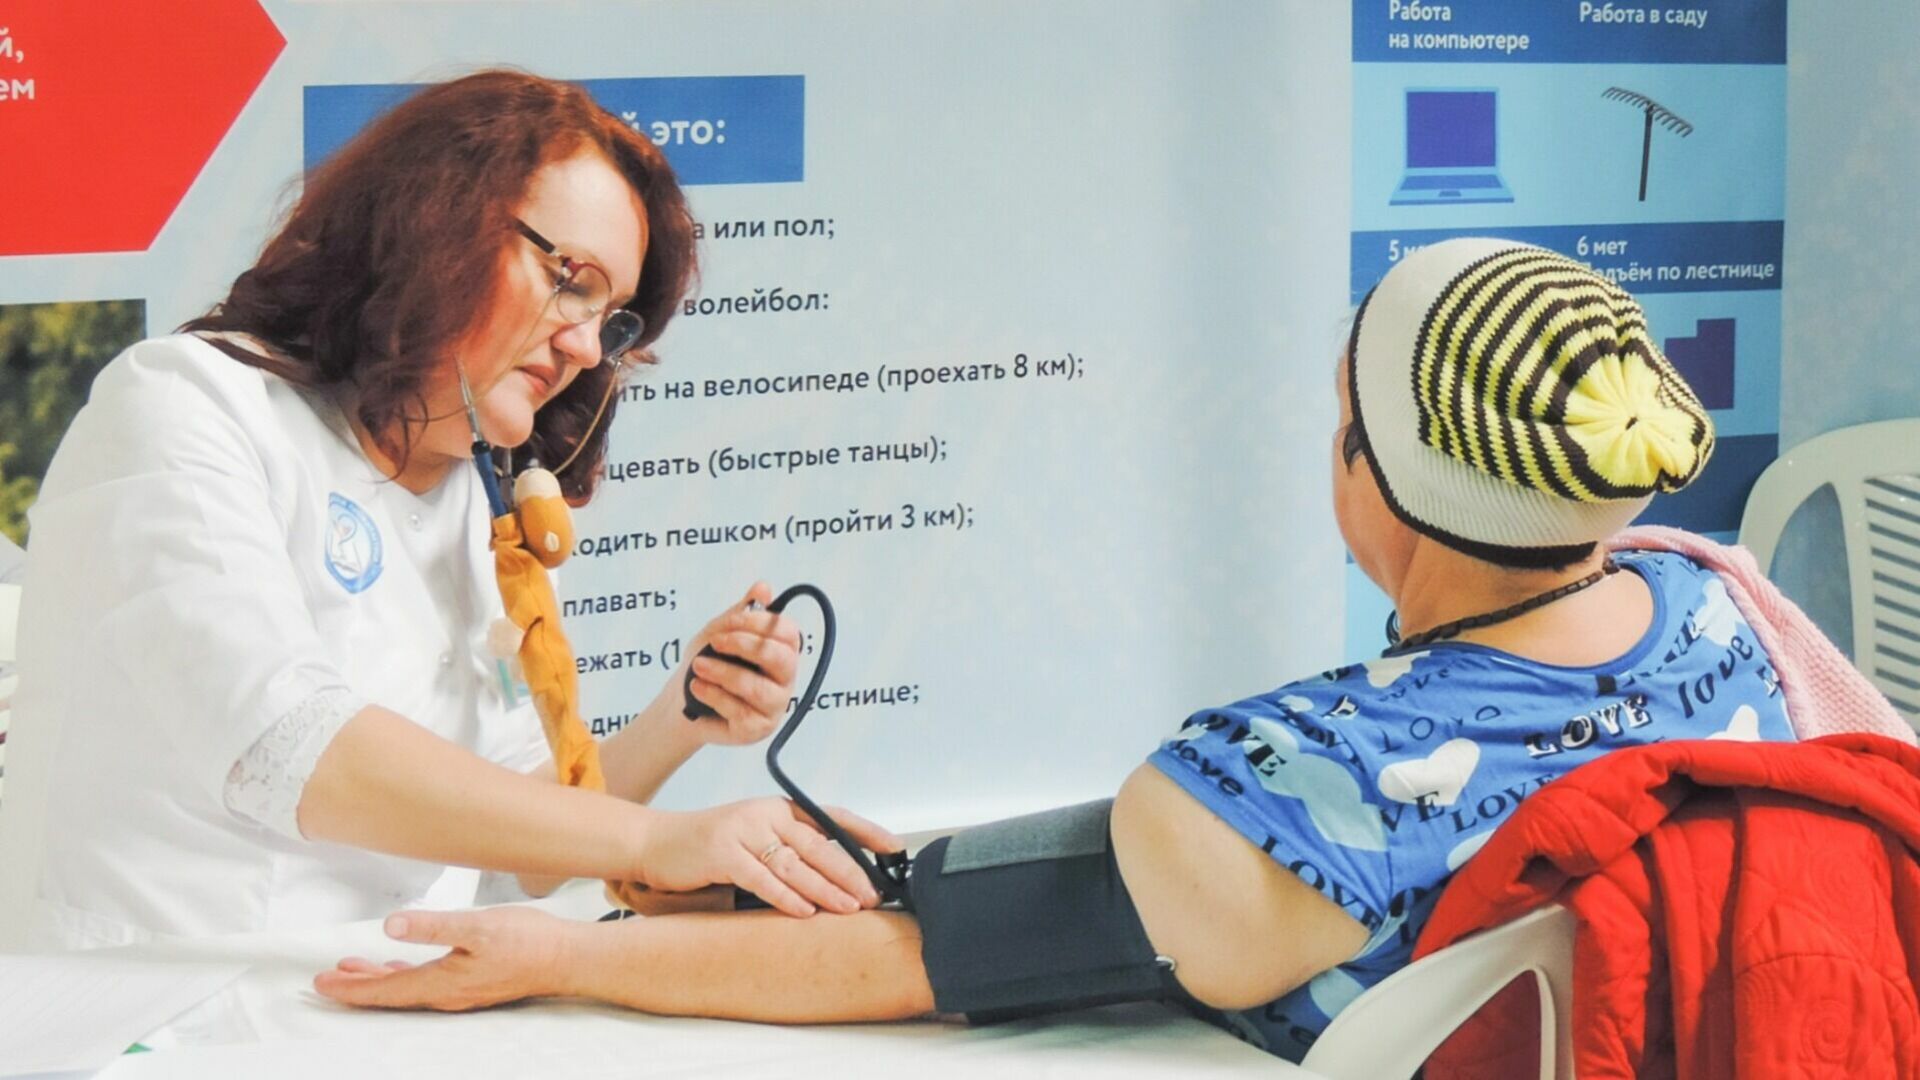 Медикам Ростовской области начислят специальную выплату размером до 18,5 тыс рублей